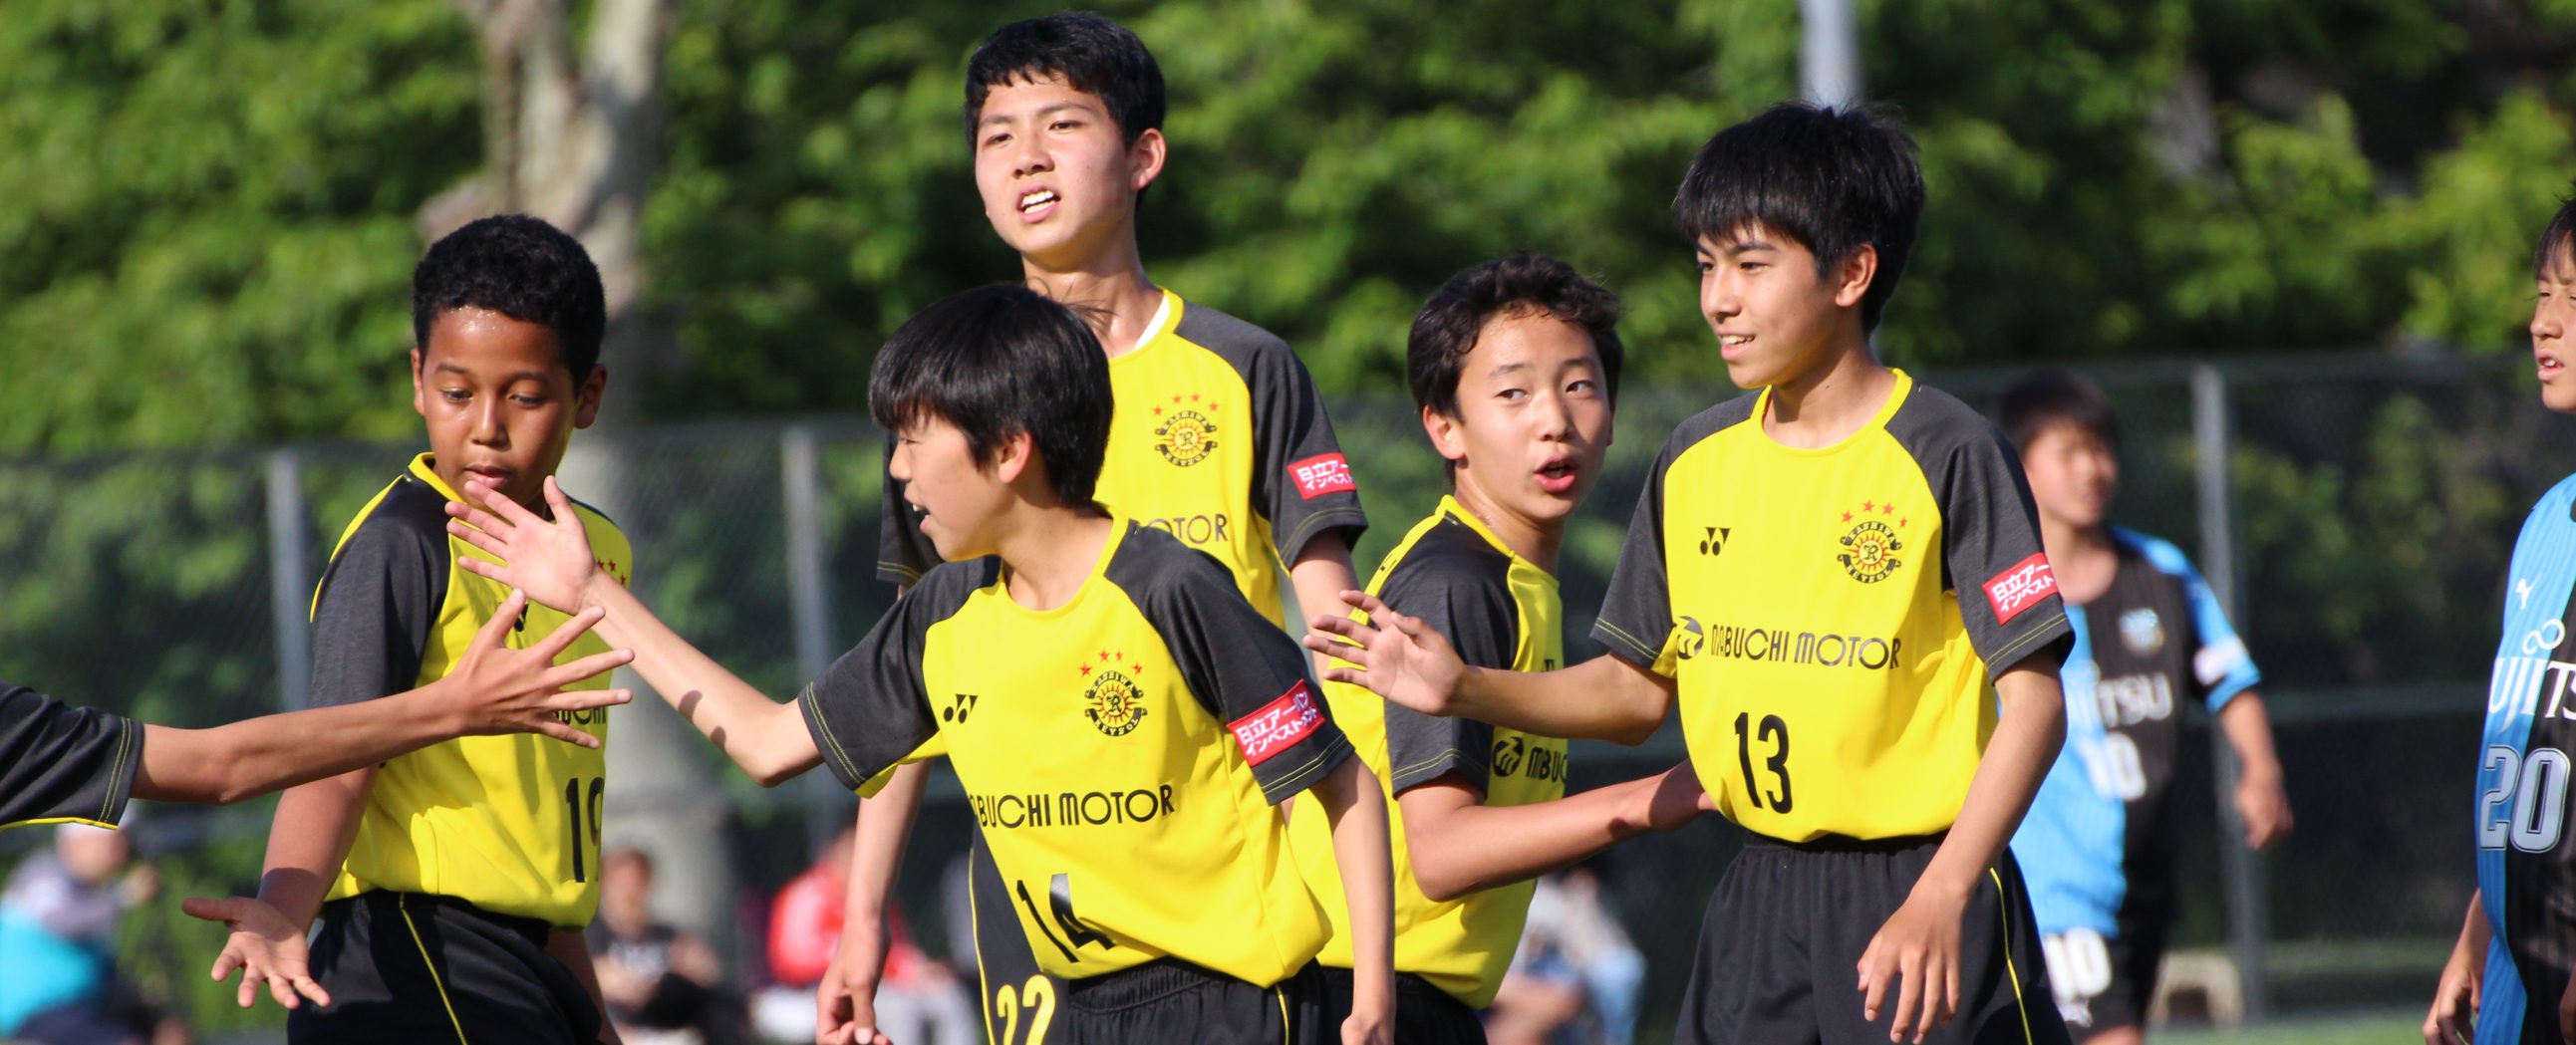 中学生 サッカー合宿やサッカー大会の情報サイト スポーツマネジメント